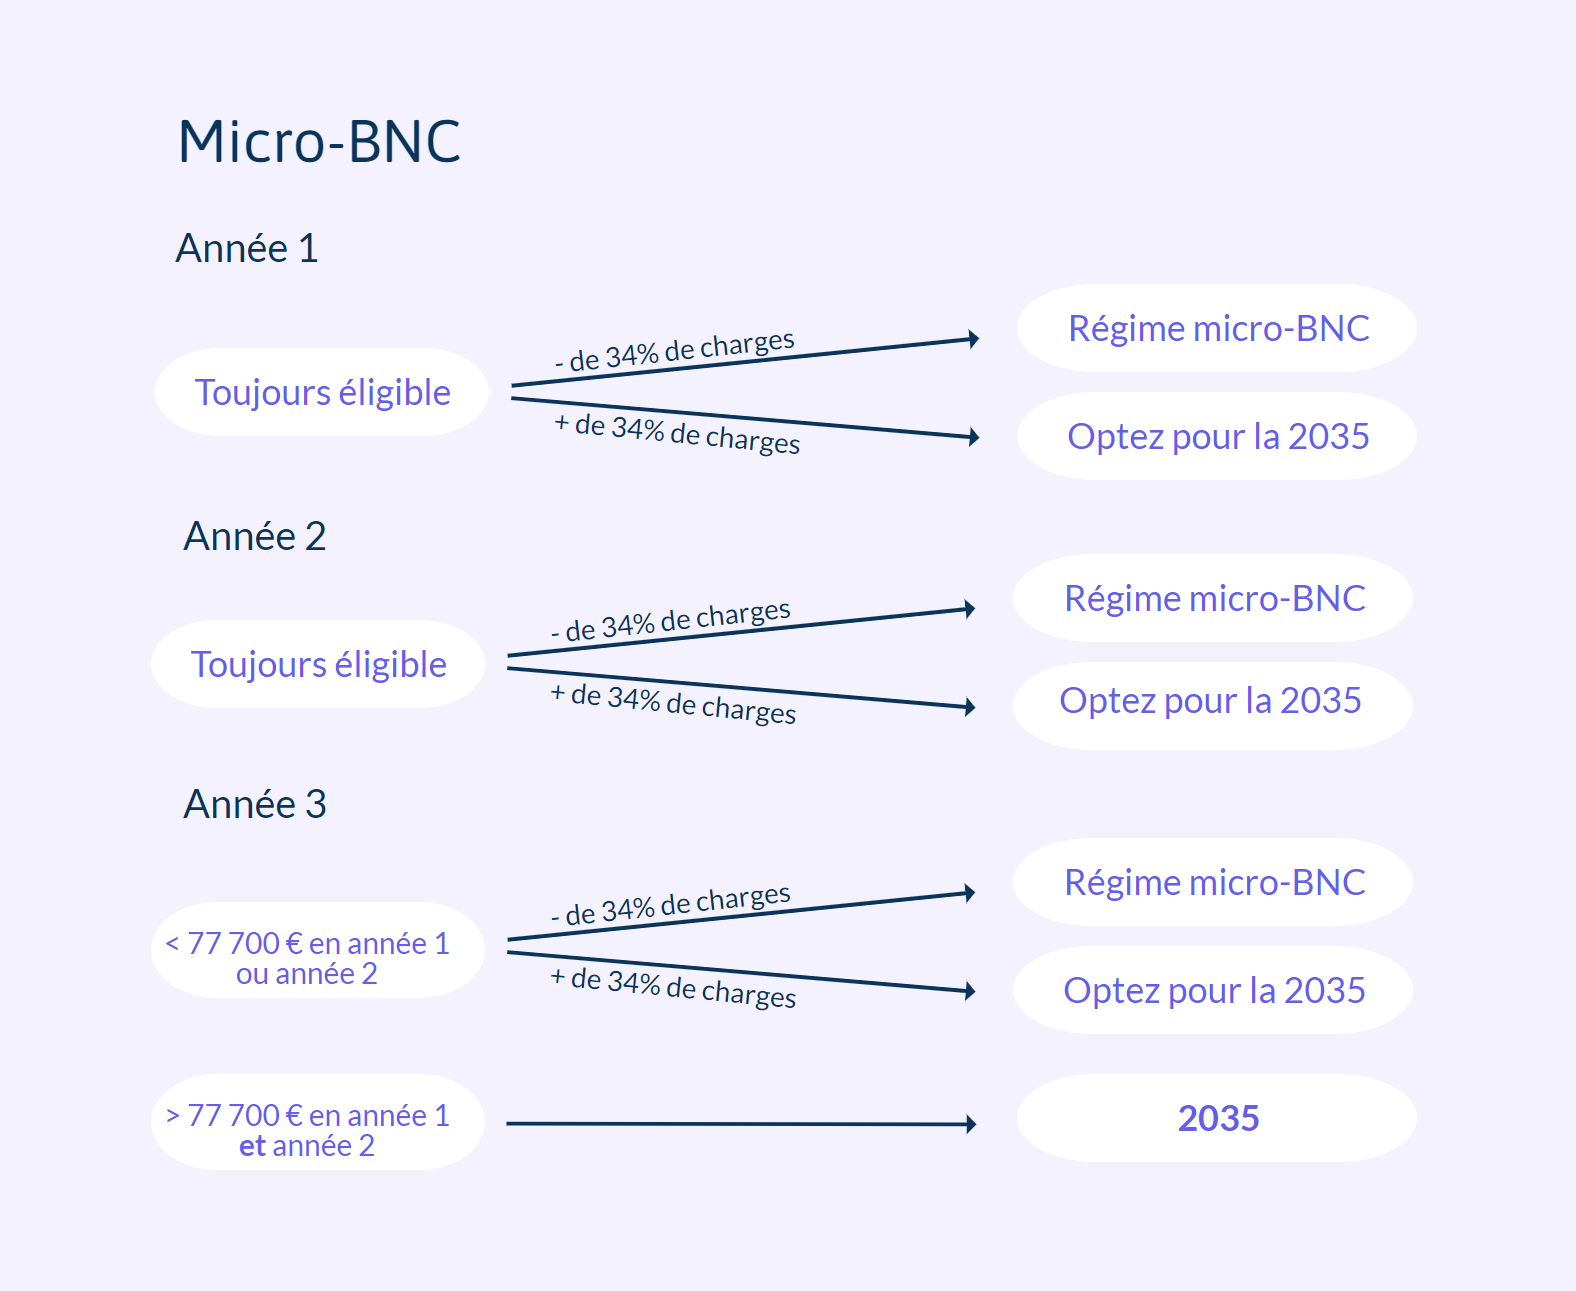 Micro-BNC ou 2035 la première année d'exercice ?